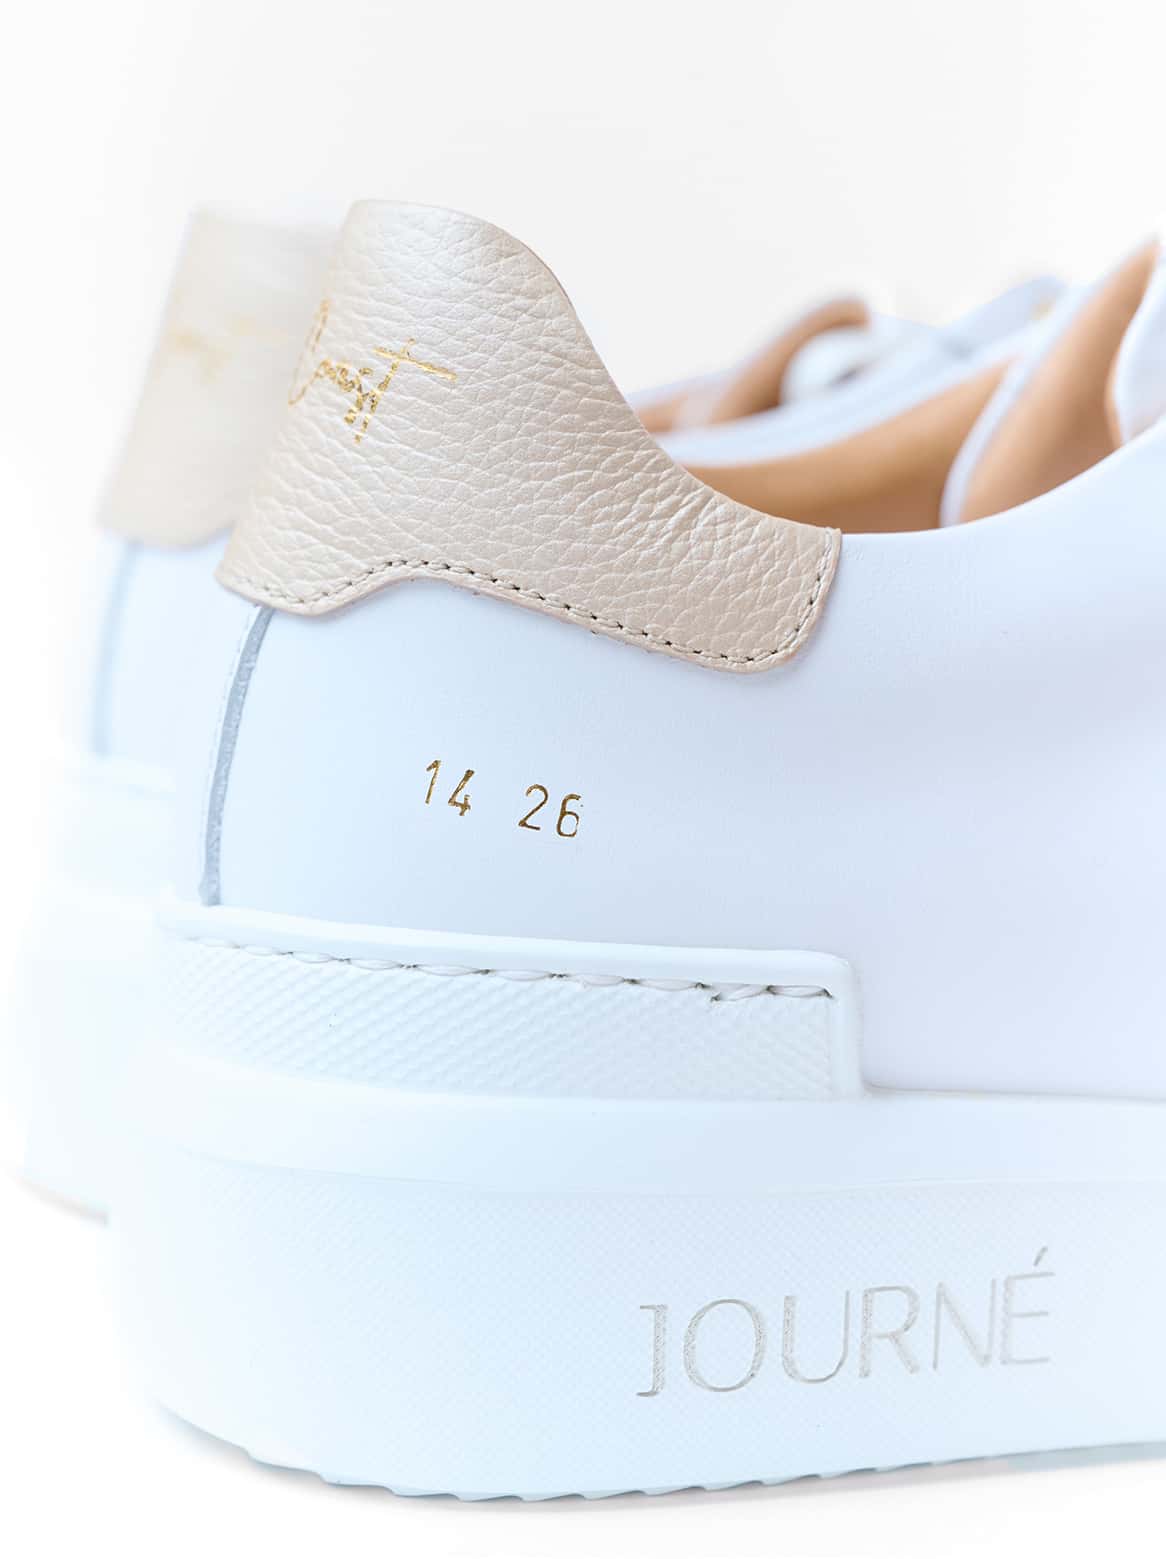 Journé Sneaker weiß mit gold